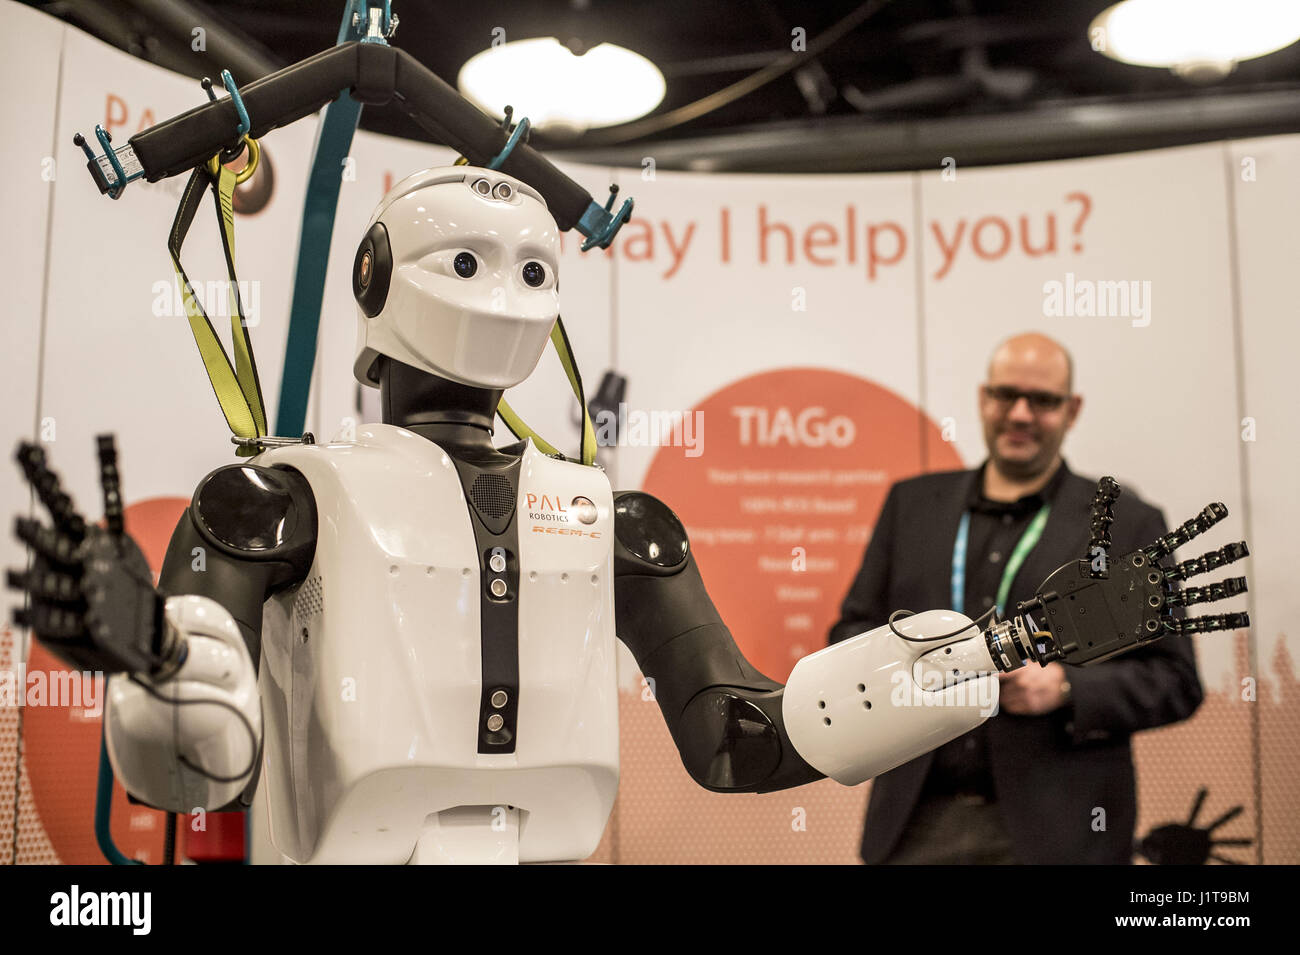 PAL-Robotik hat Show ein Laufroboter beim European Robotics Forum in Edinburgh.  Mitwirkende: Walking Robot wo: Edinburgh, Vereinigtes Königreich bei: Kredit-22. März 2017: Euan Cherry/WENN.com Stockfoto